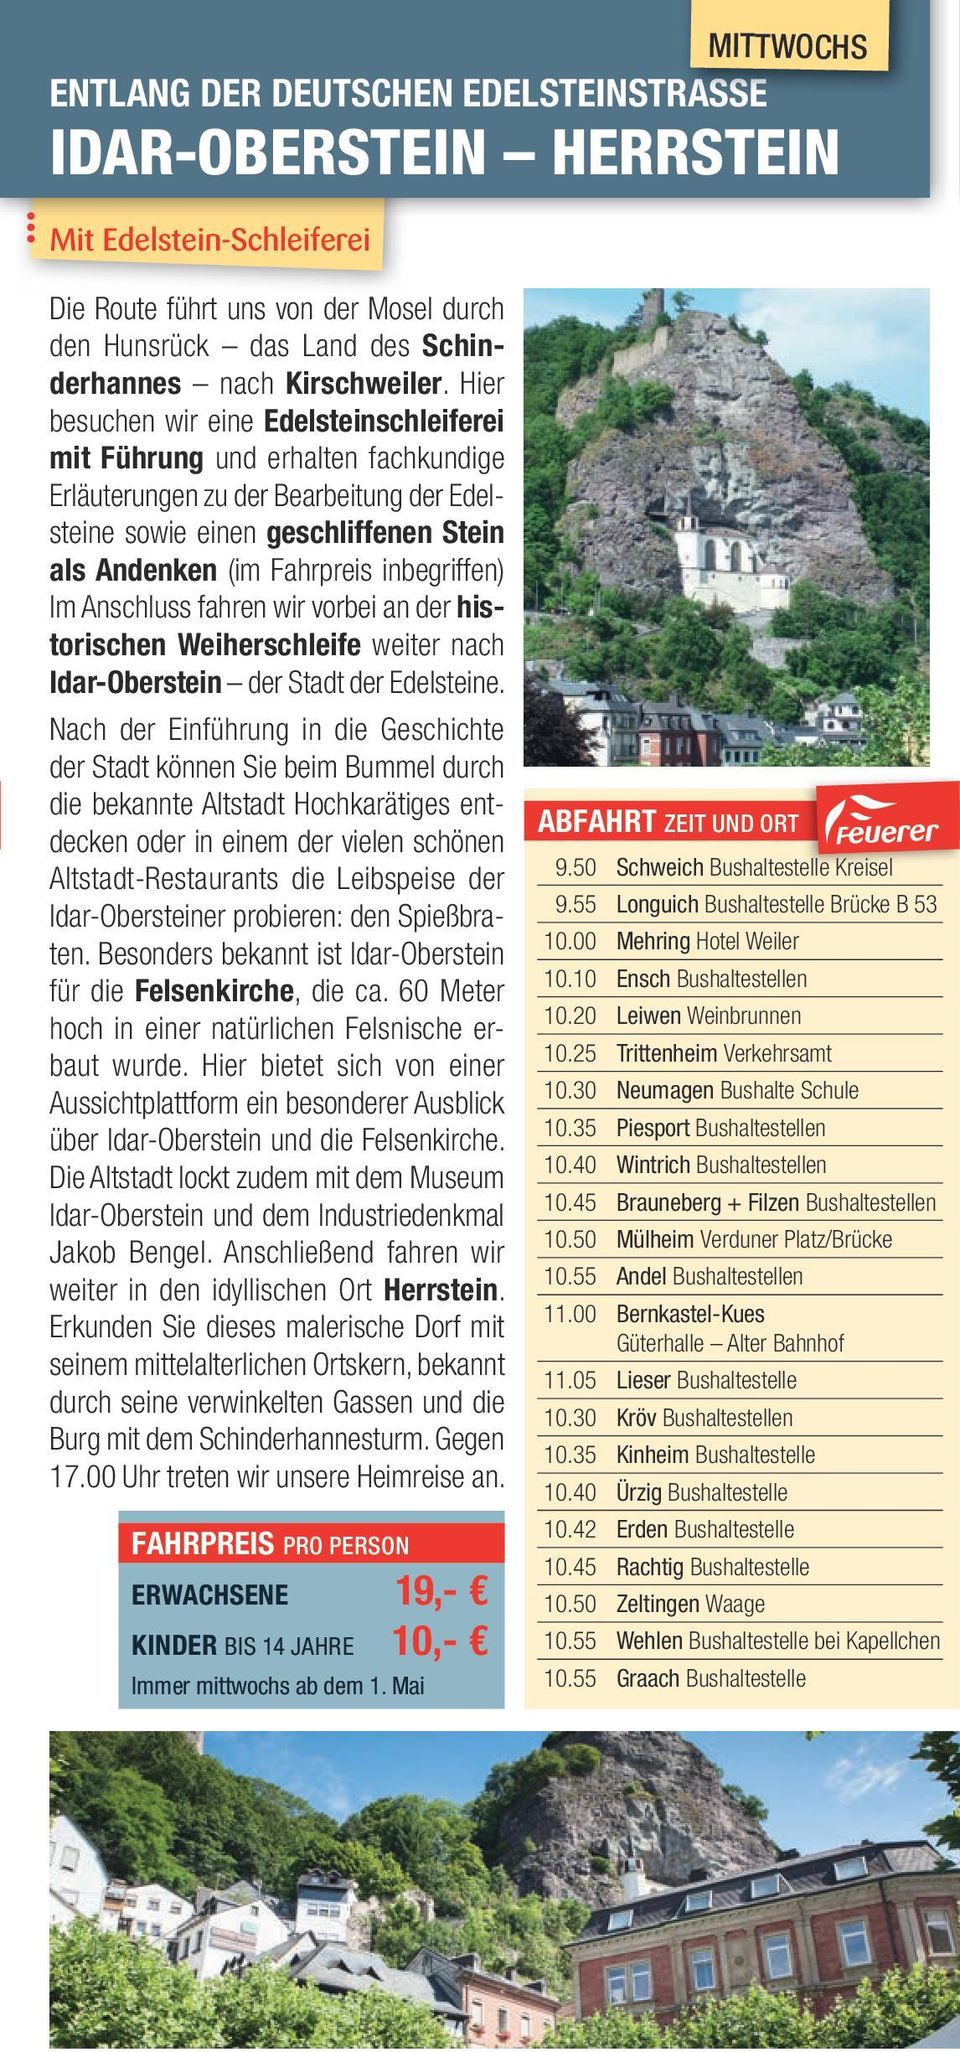 inbegriffen) Im Anschluss fahren wir vorbei an der historischen Weiherschleife weiter nach Idar-Oberstein der Stadt der Edelsteine.